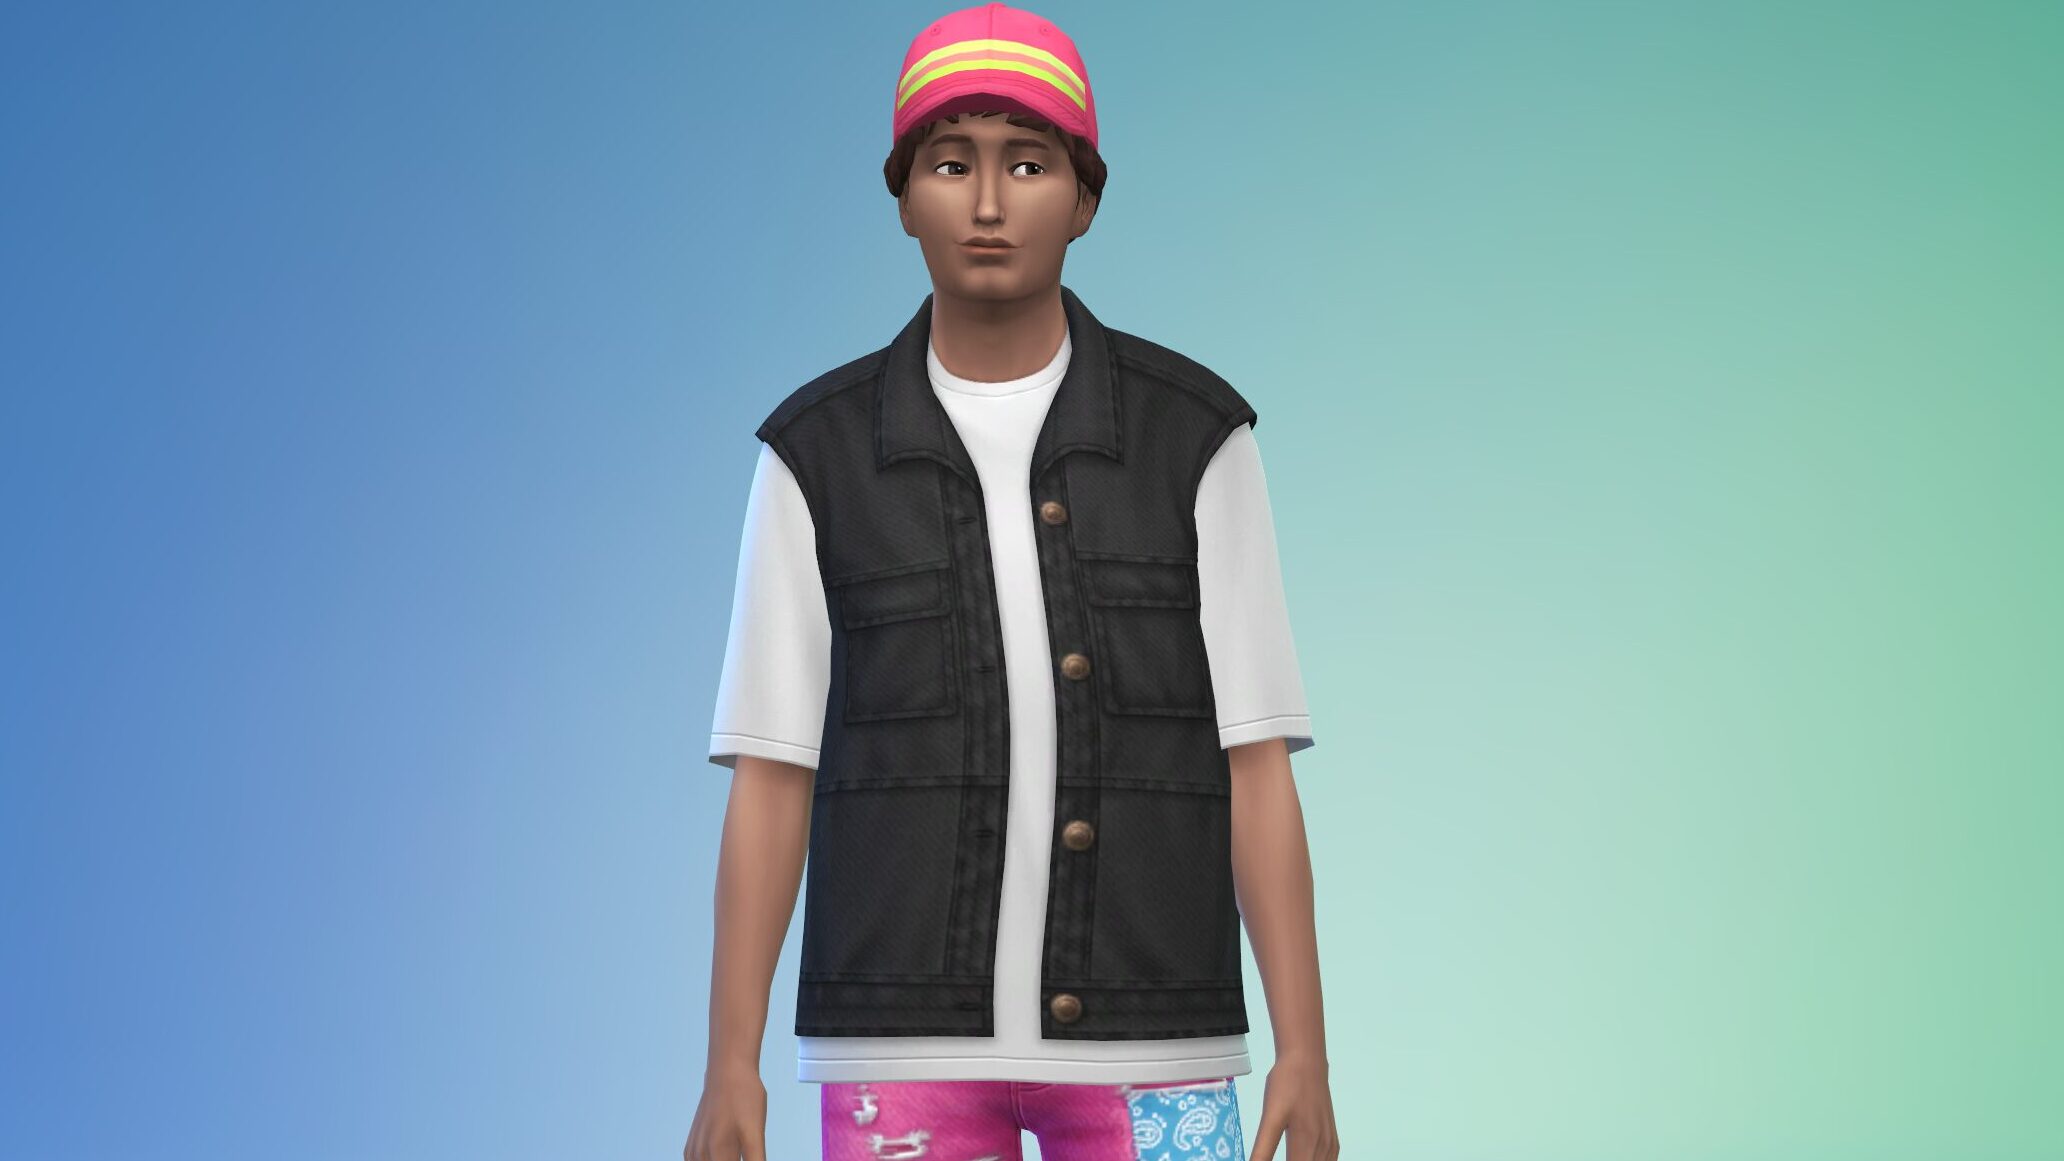 Sims stylé en gilet et bonnet.